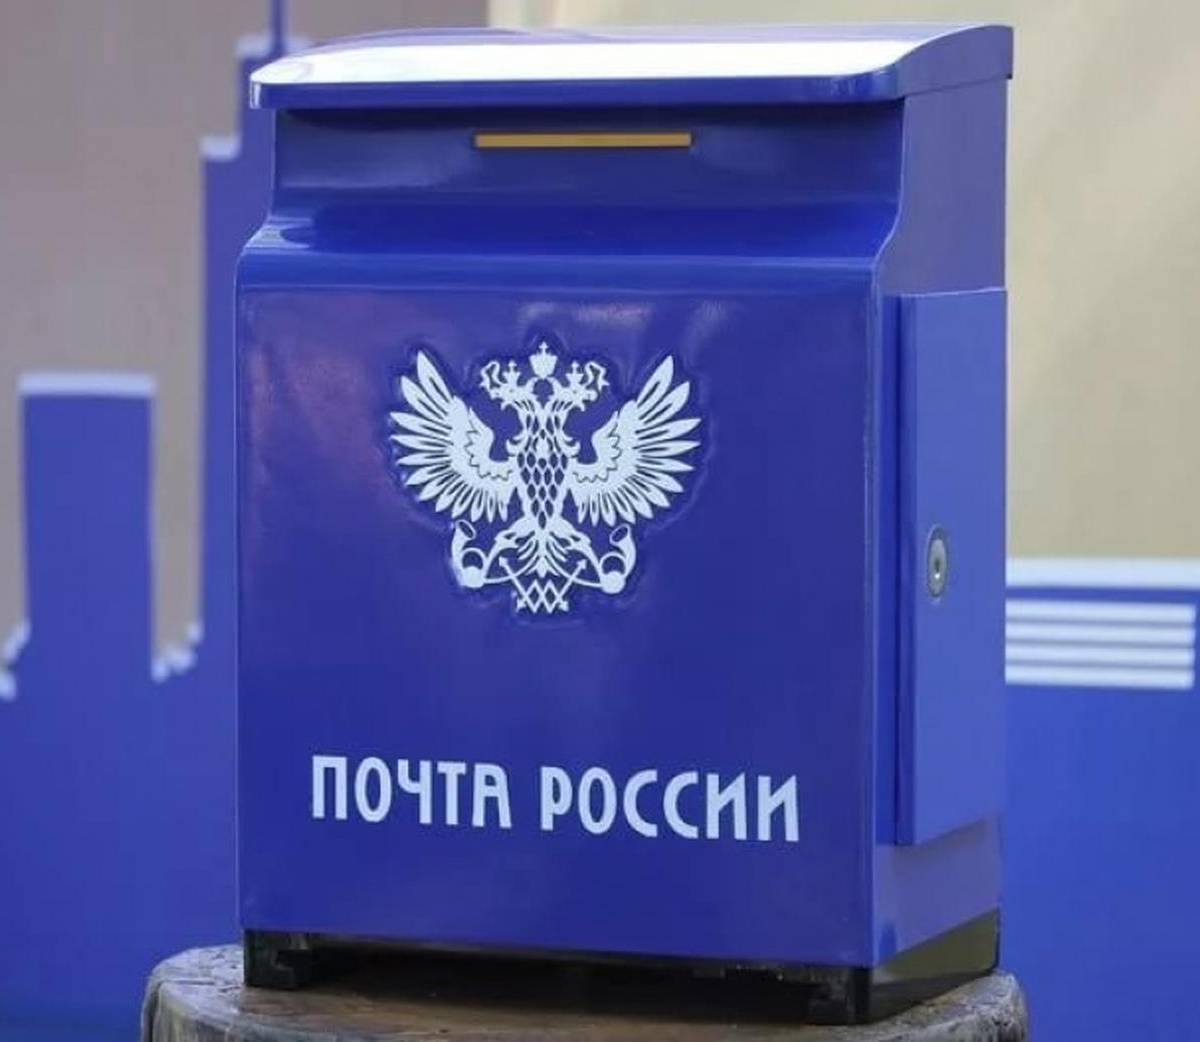 «Почта России» намерена взимать 0,5% оборота маркетплейсов